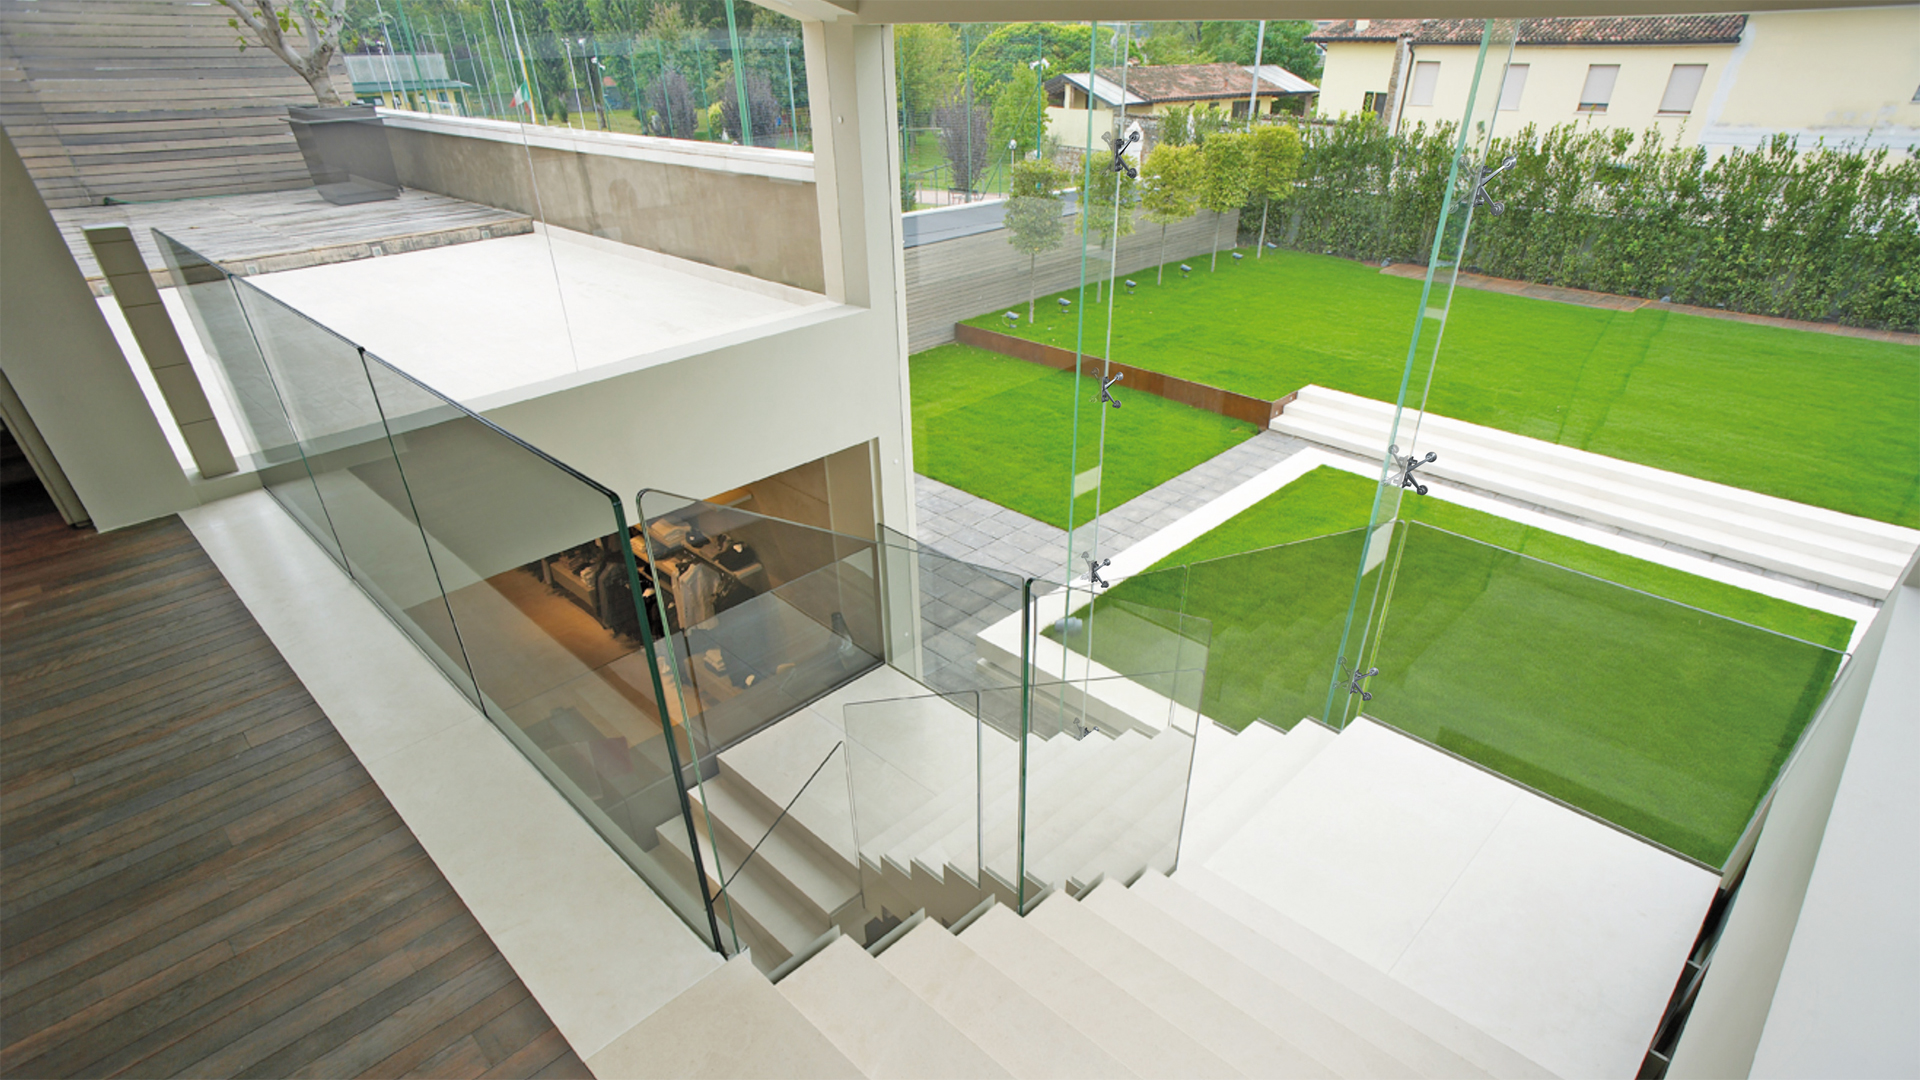 Große Glasfronten lassen die Sonne ins Haus und bieten freie Sicht in die grüne Natur